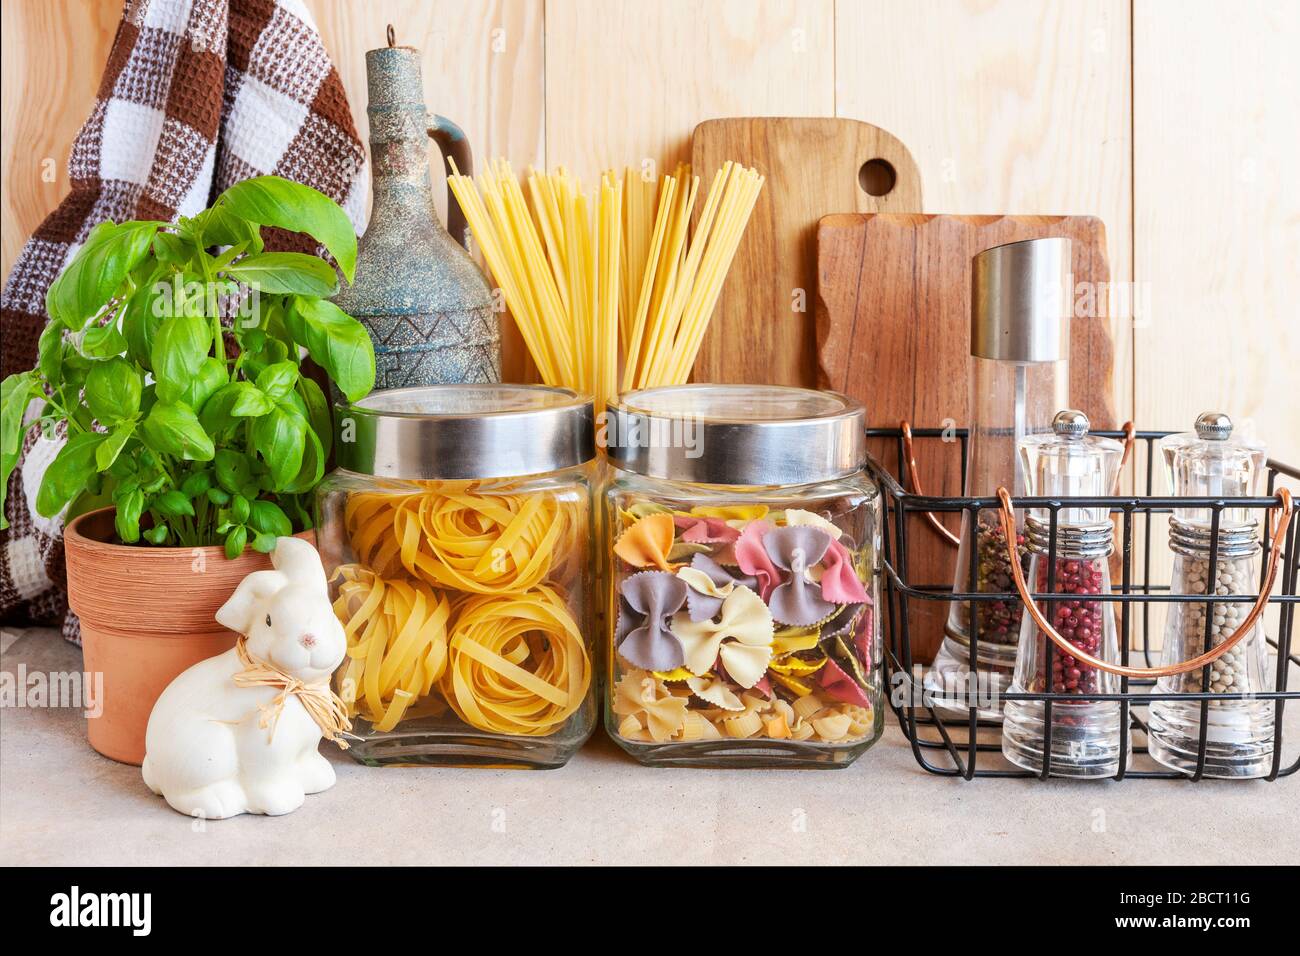 https://c8.alamy.com/compes/2bct11g/tarros-de-cereales-utensilios-de-cocina-y-plantas-para-el-hogar-entorno-saludable-cocina-comoda-concepto-de-estilo-de-vida-sostenible-2bct11g.jpg